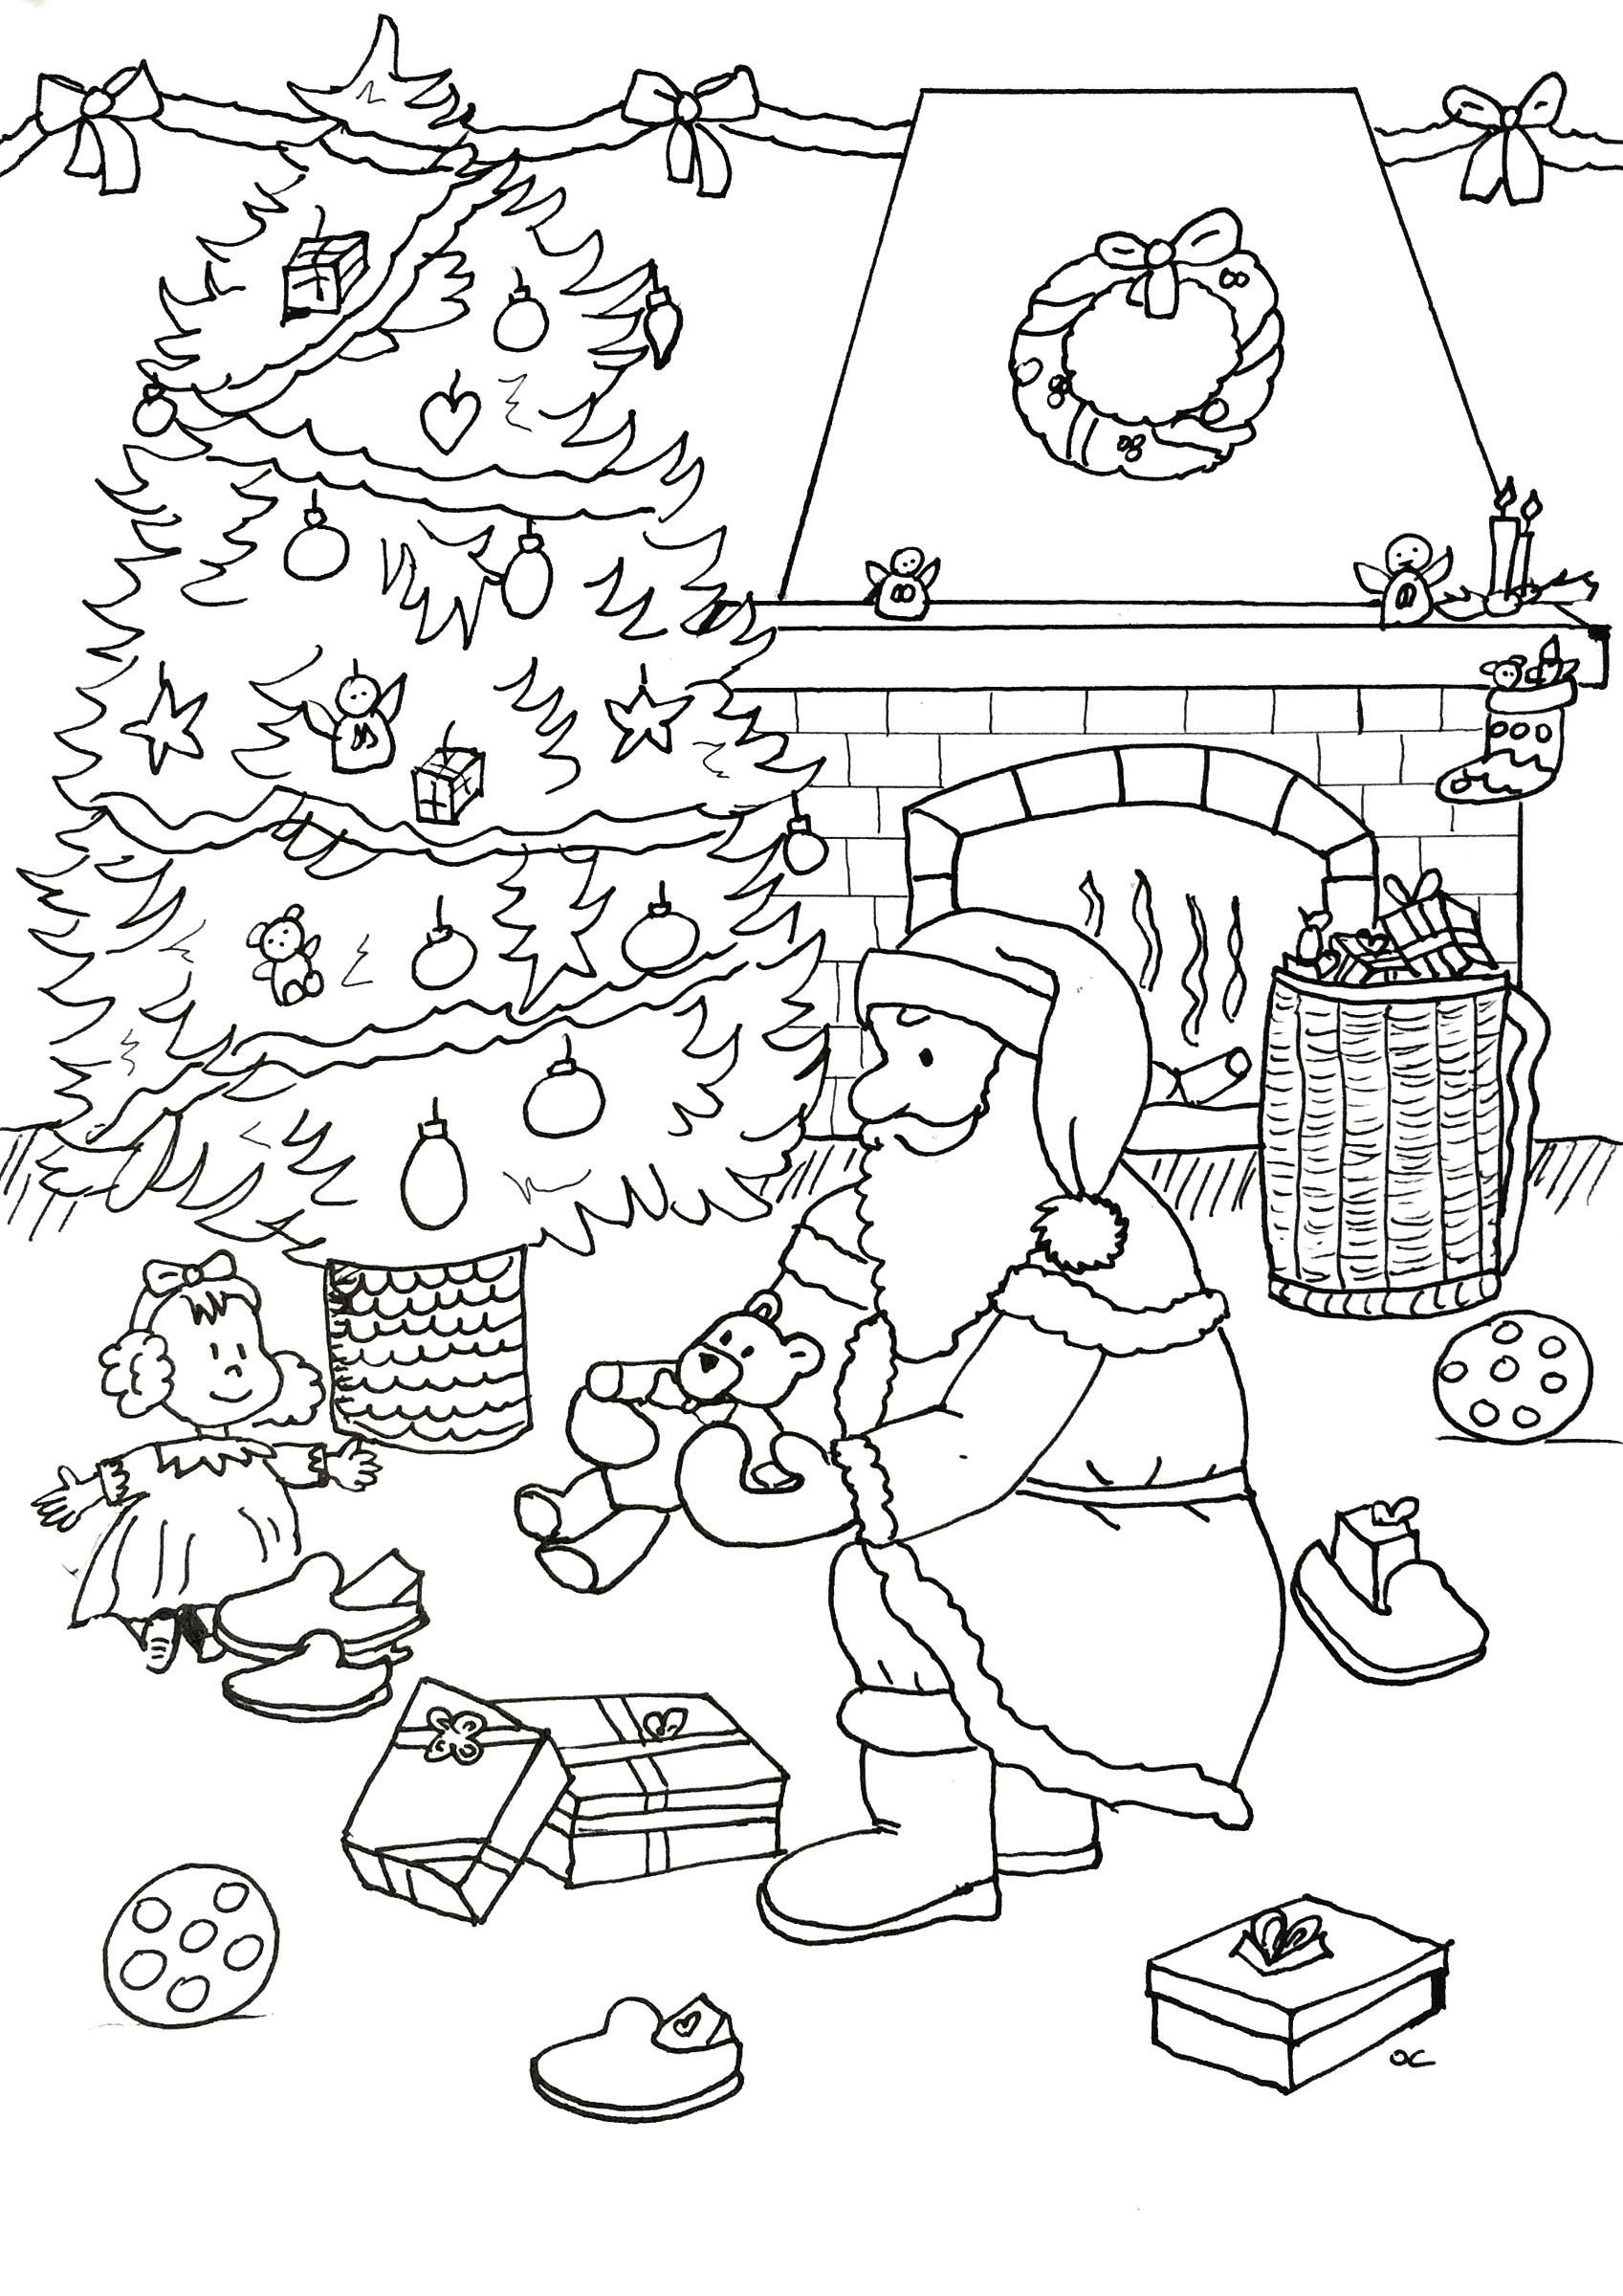 Le Père Noël préparant les cadeaux au pied du sapin, par Olivier